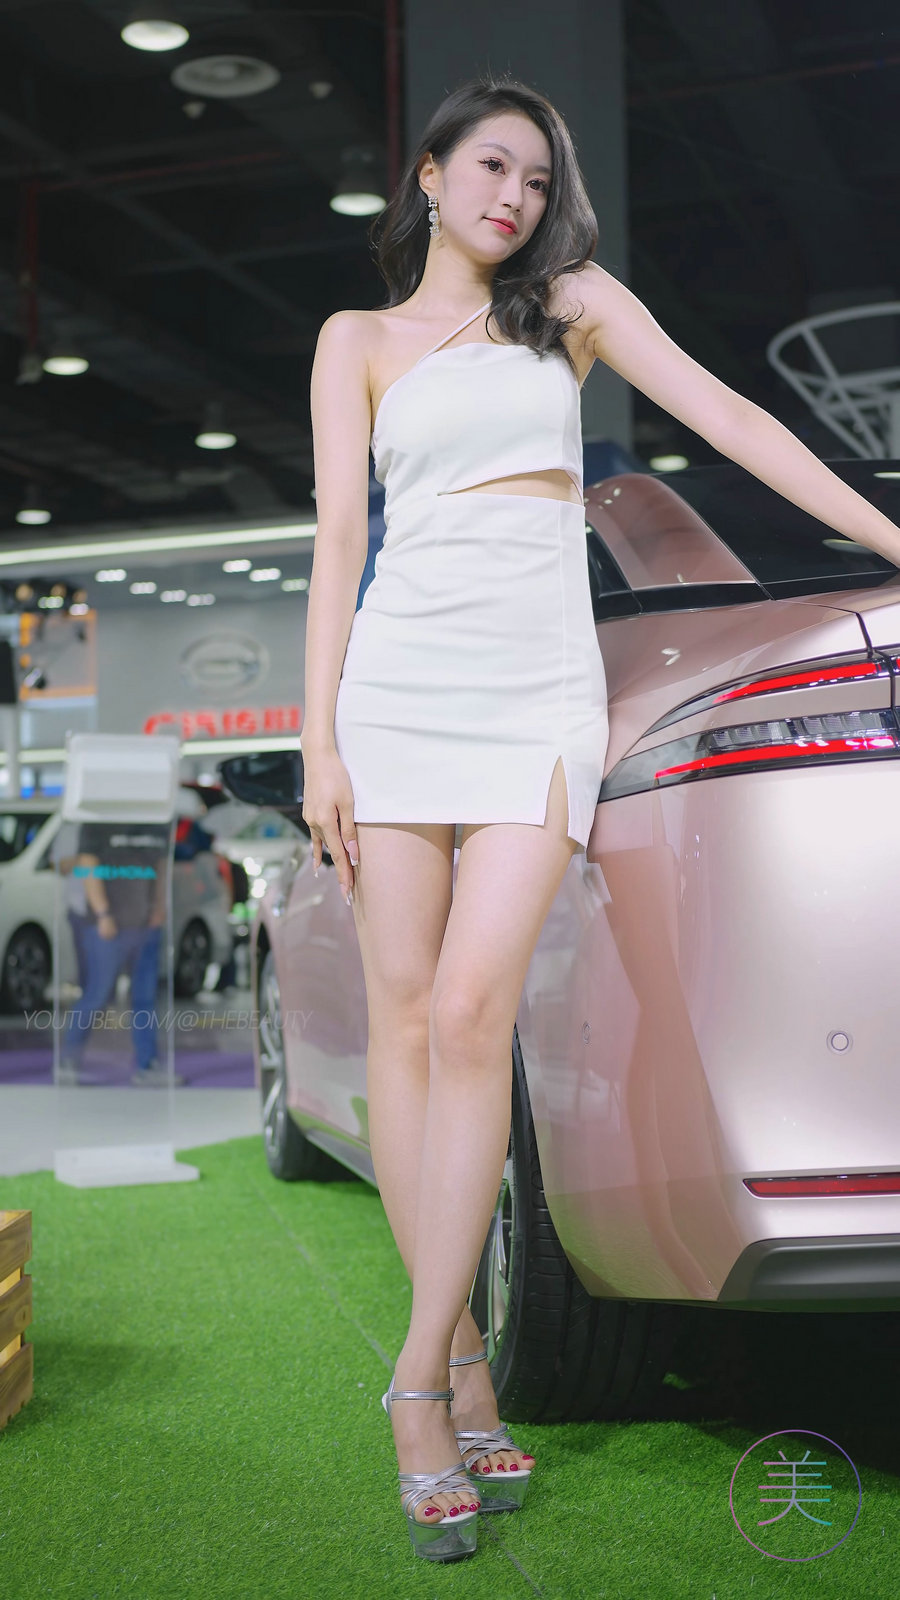 2023 广州华南车展 Racing Model AION车模05 [440MB]